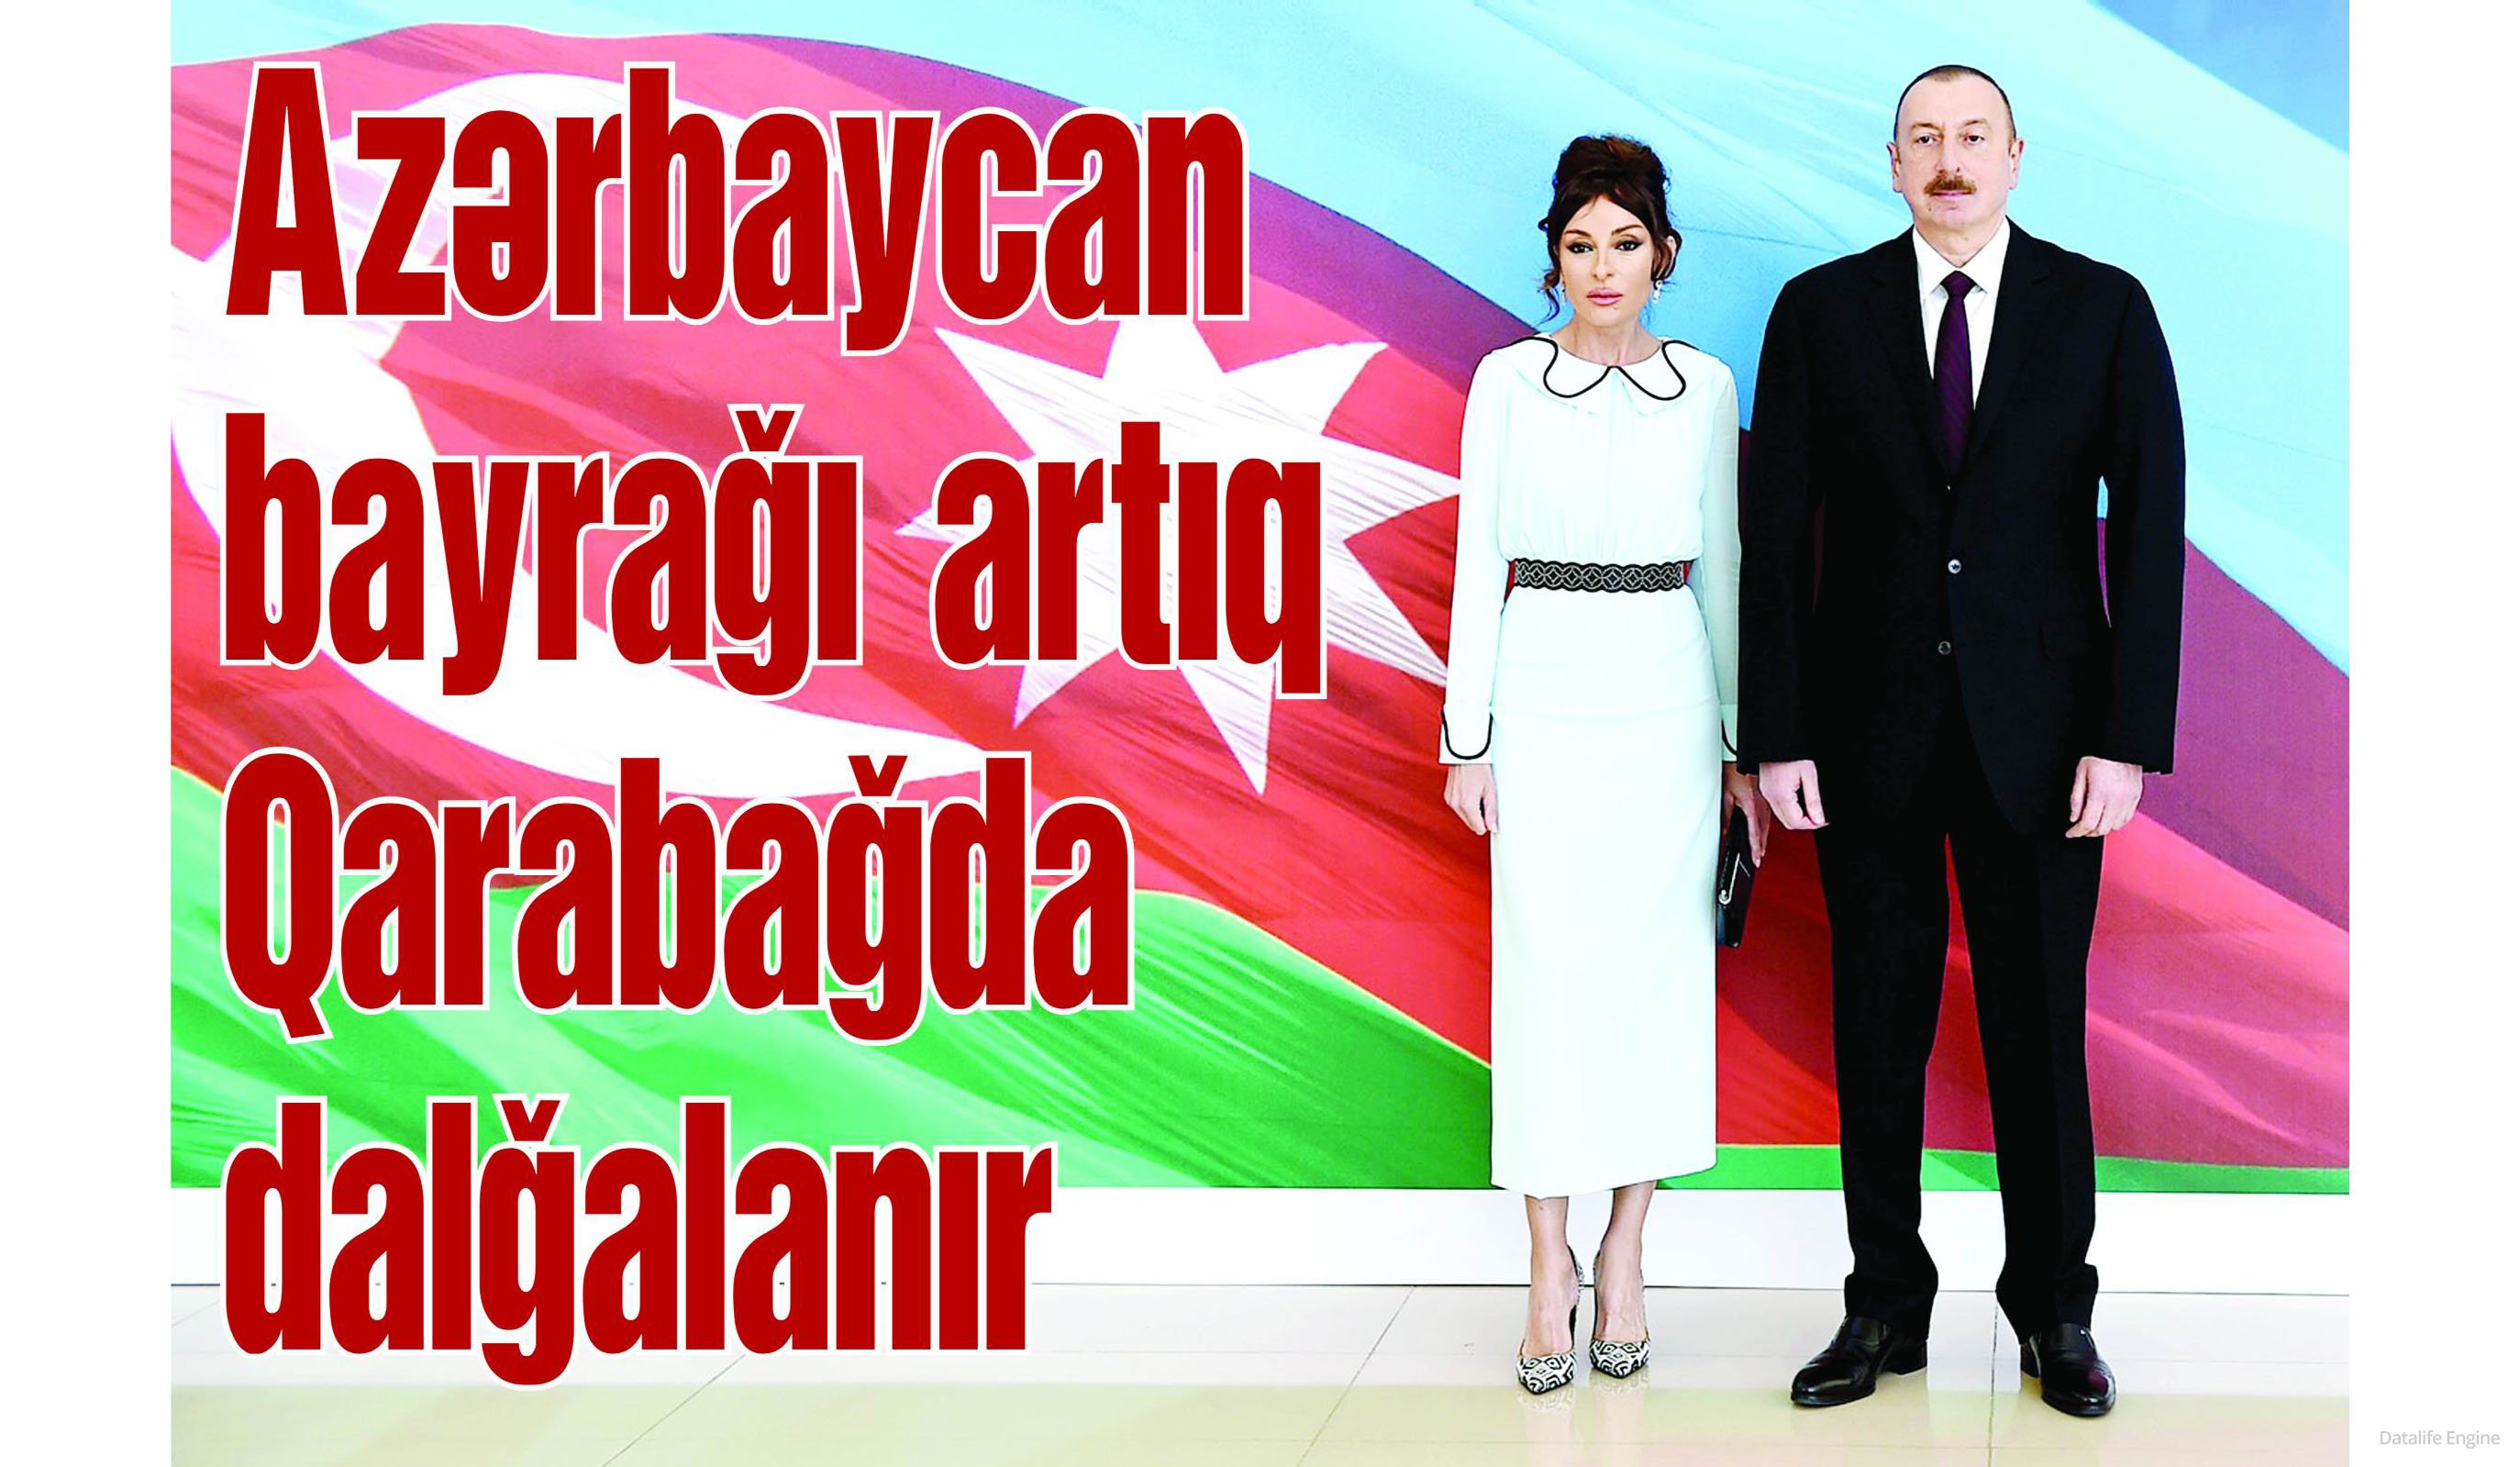 Azərbaycan bayrağı artıq Qarabağda dalğalanır